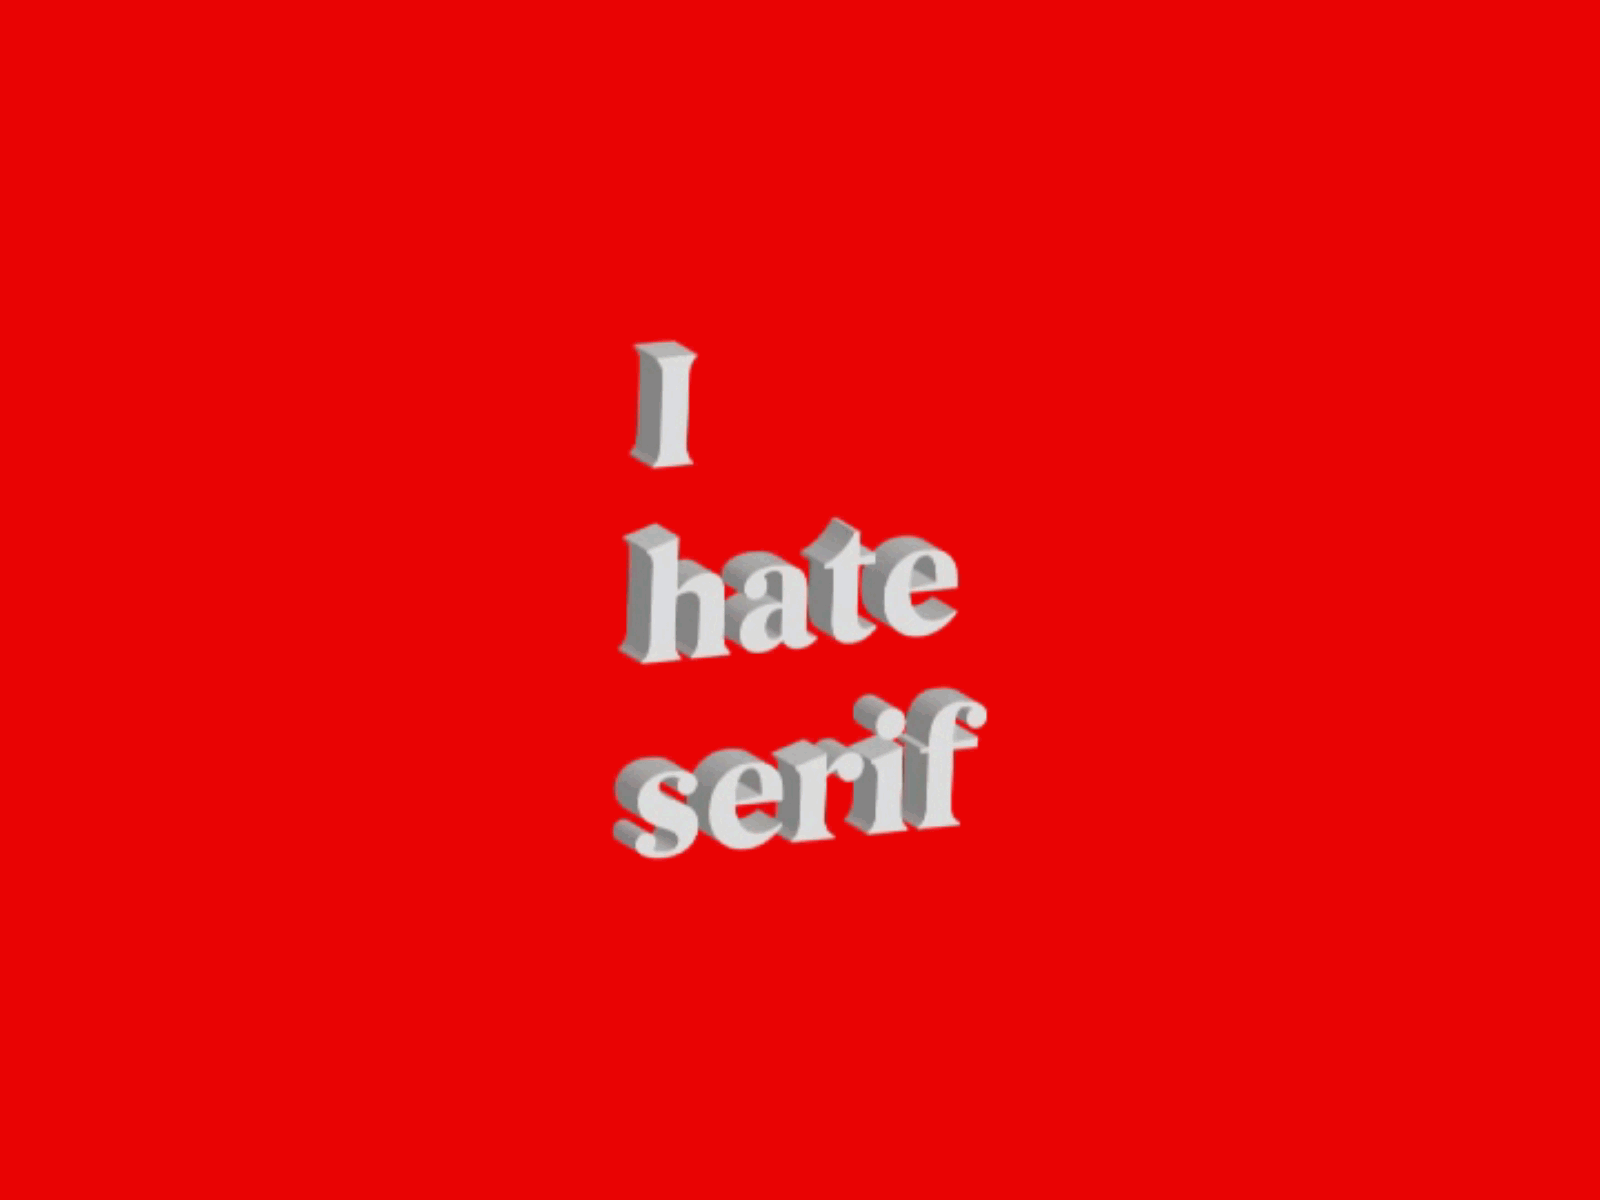 I hate serifs